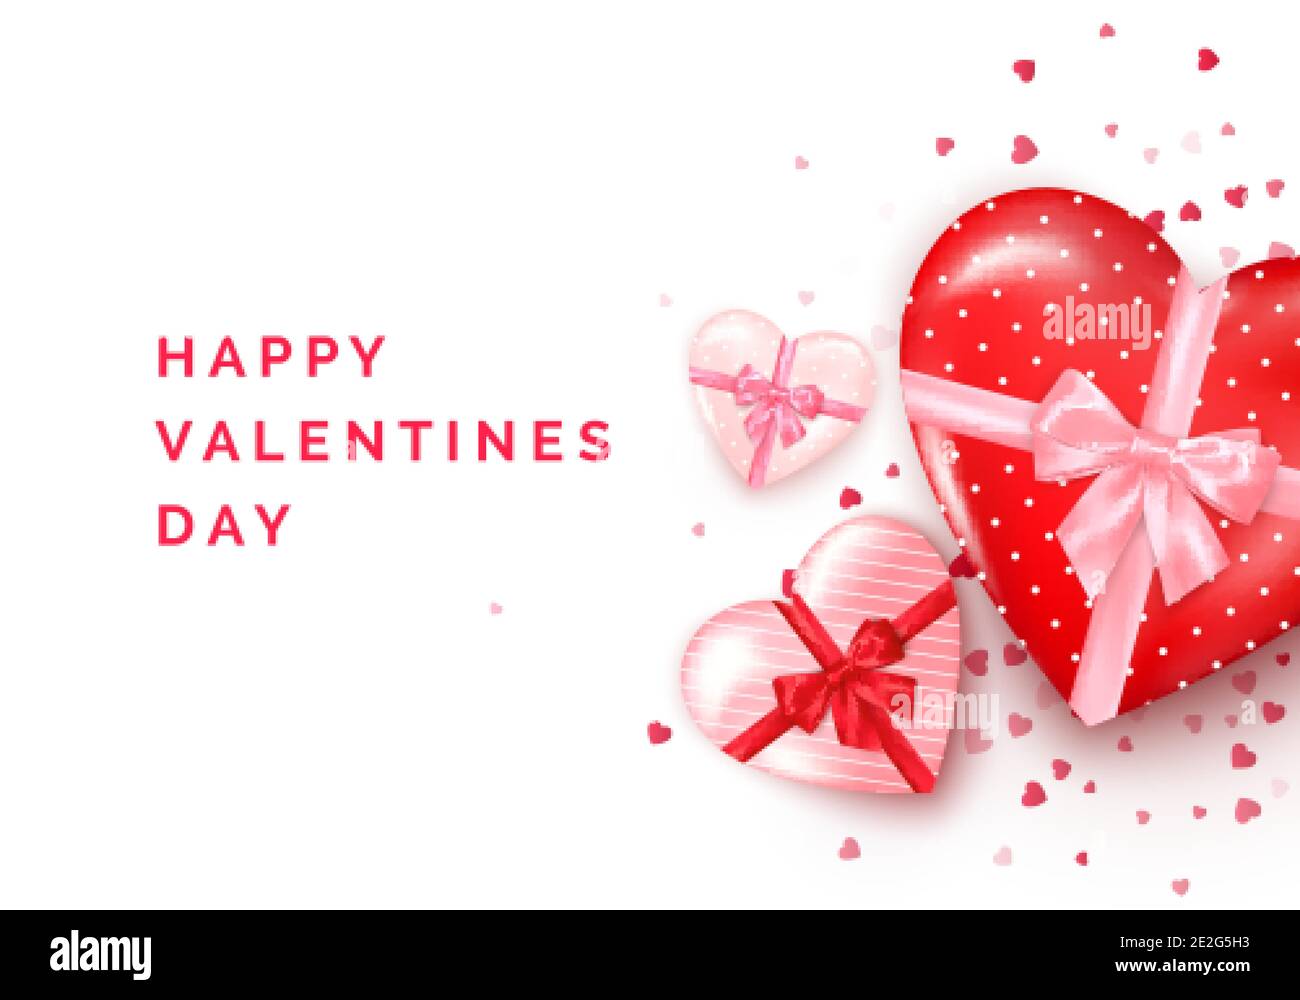 Grußkarte zum Valentinstag. Herzförmige Geschenkschachteln mit Seidenschleife und Konfetti auf dem Hintergrund. Vektorgrafik Stock Vektor